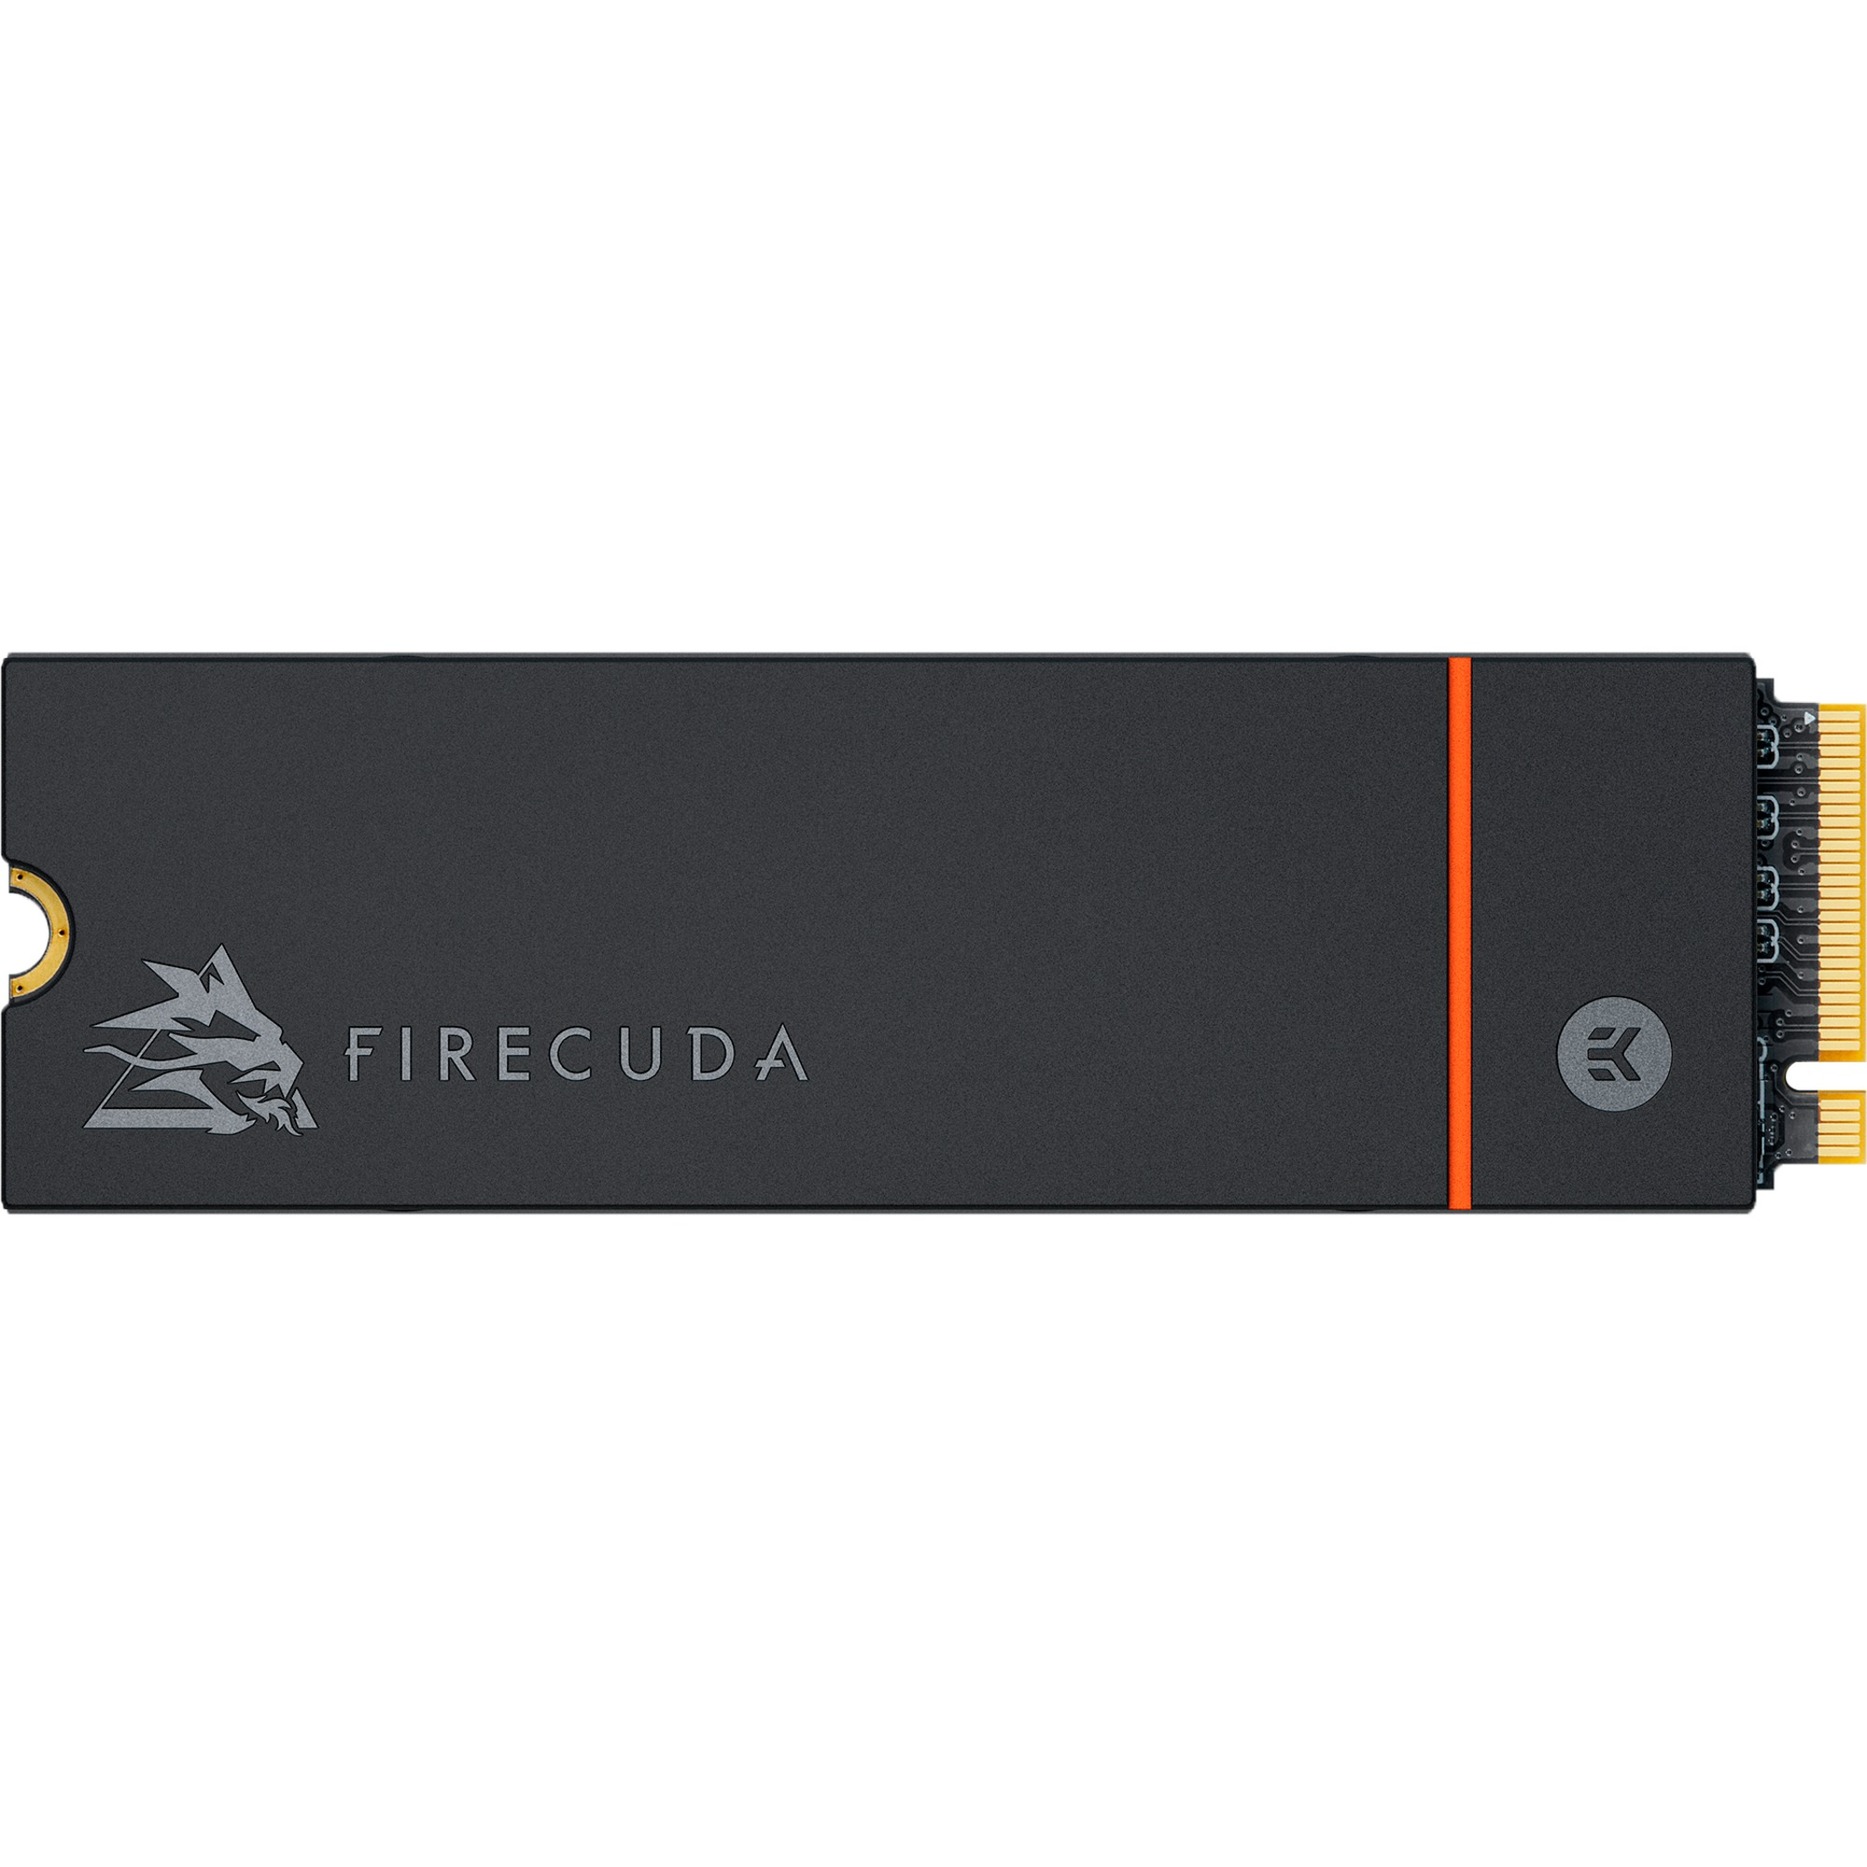 FireCuda 530 1 TB mit Kühlkörper, SSD von Seagate